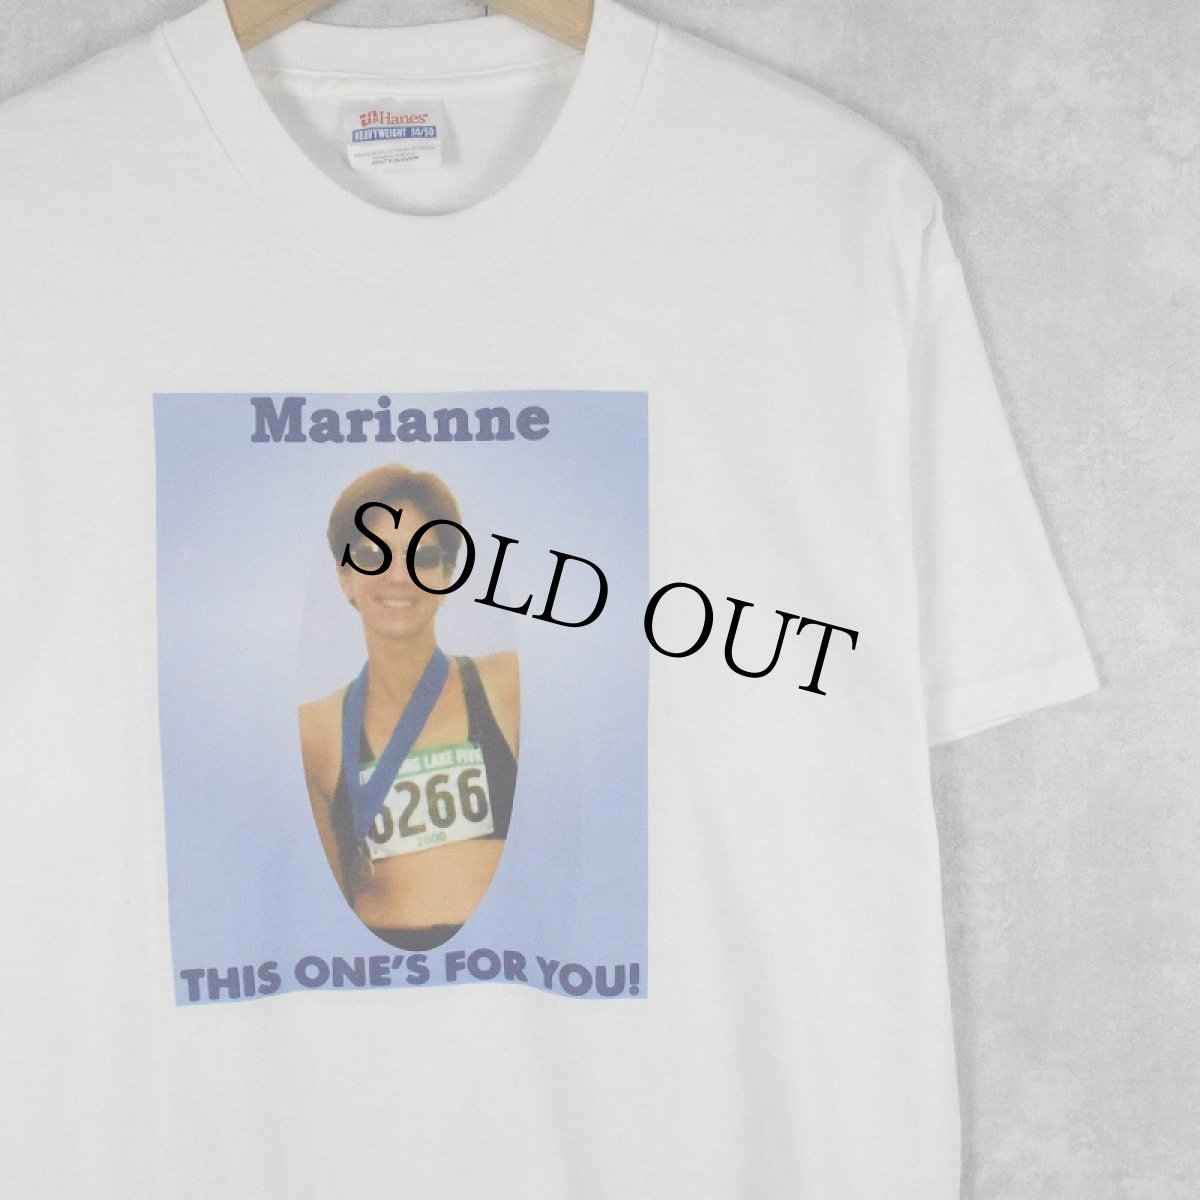 画像1: "Marianne THIS ONE'S FOR YOU !" メモリアルフォトTシャツ M (1)